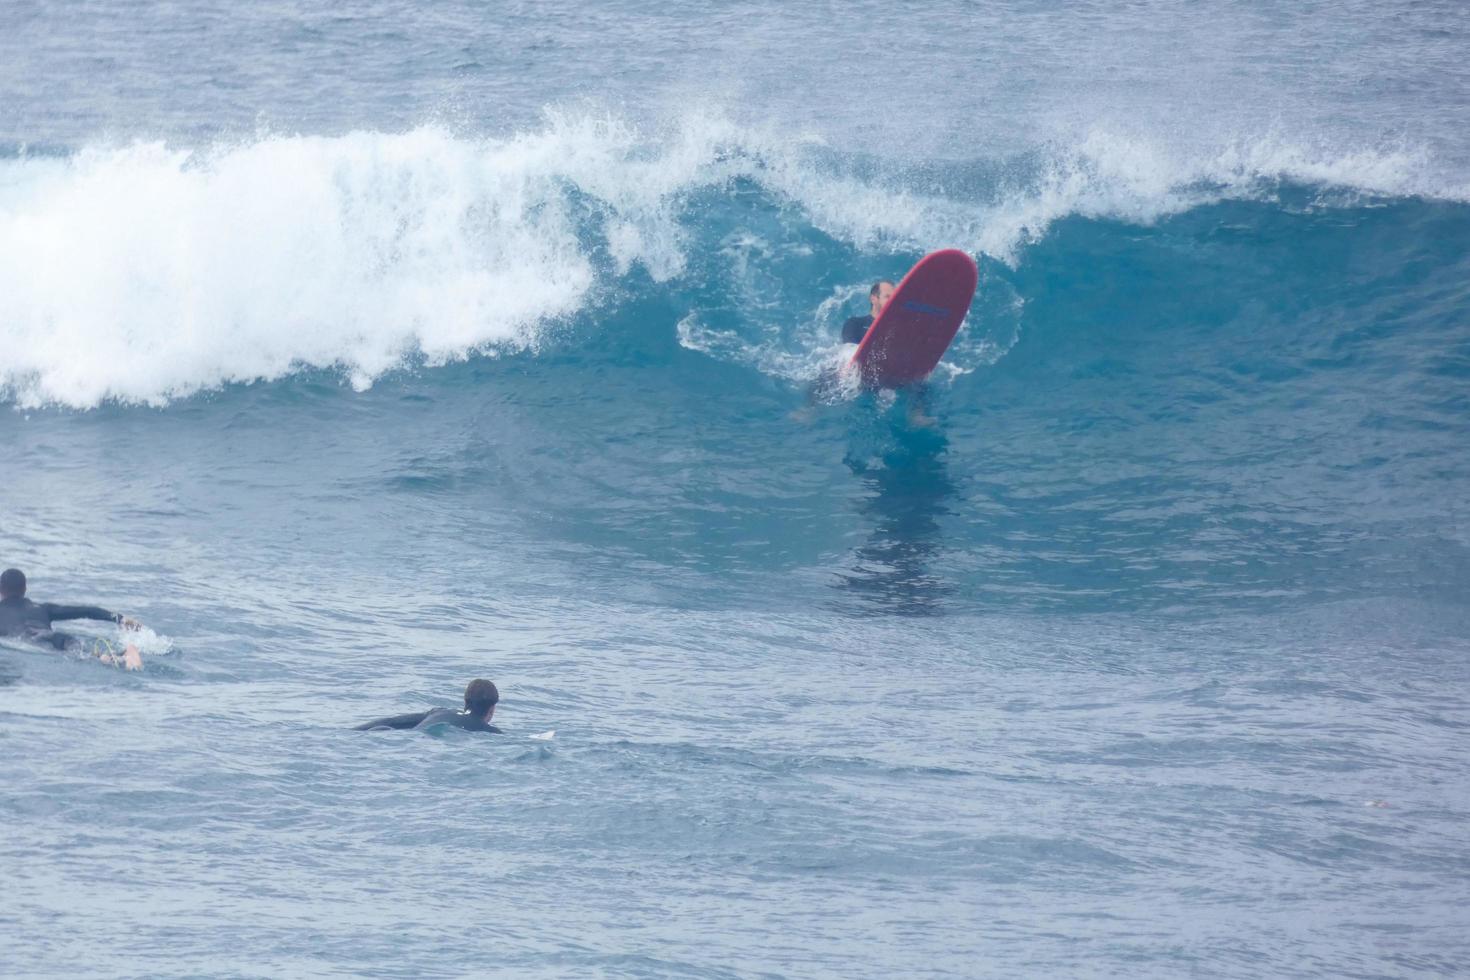 Surfer Reiten klein Ozean Wellen foto